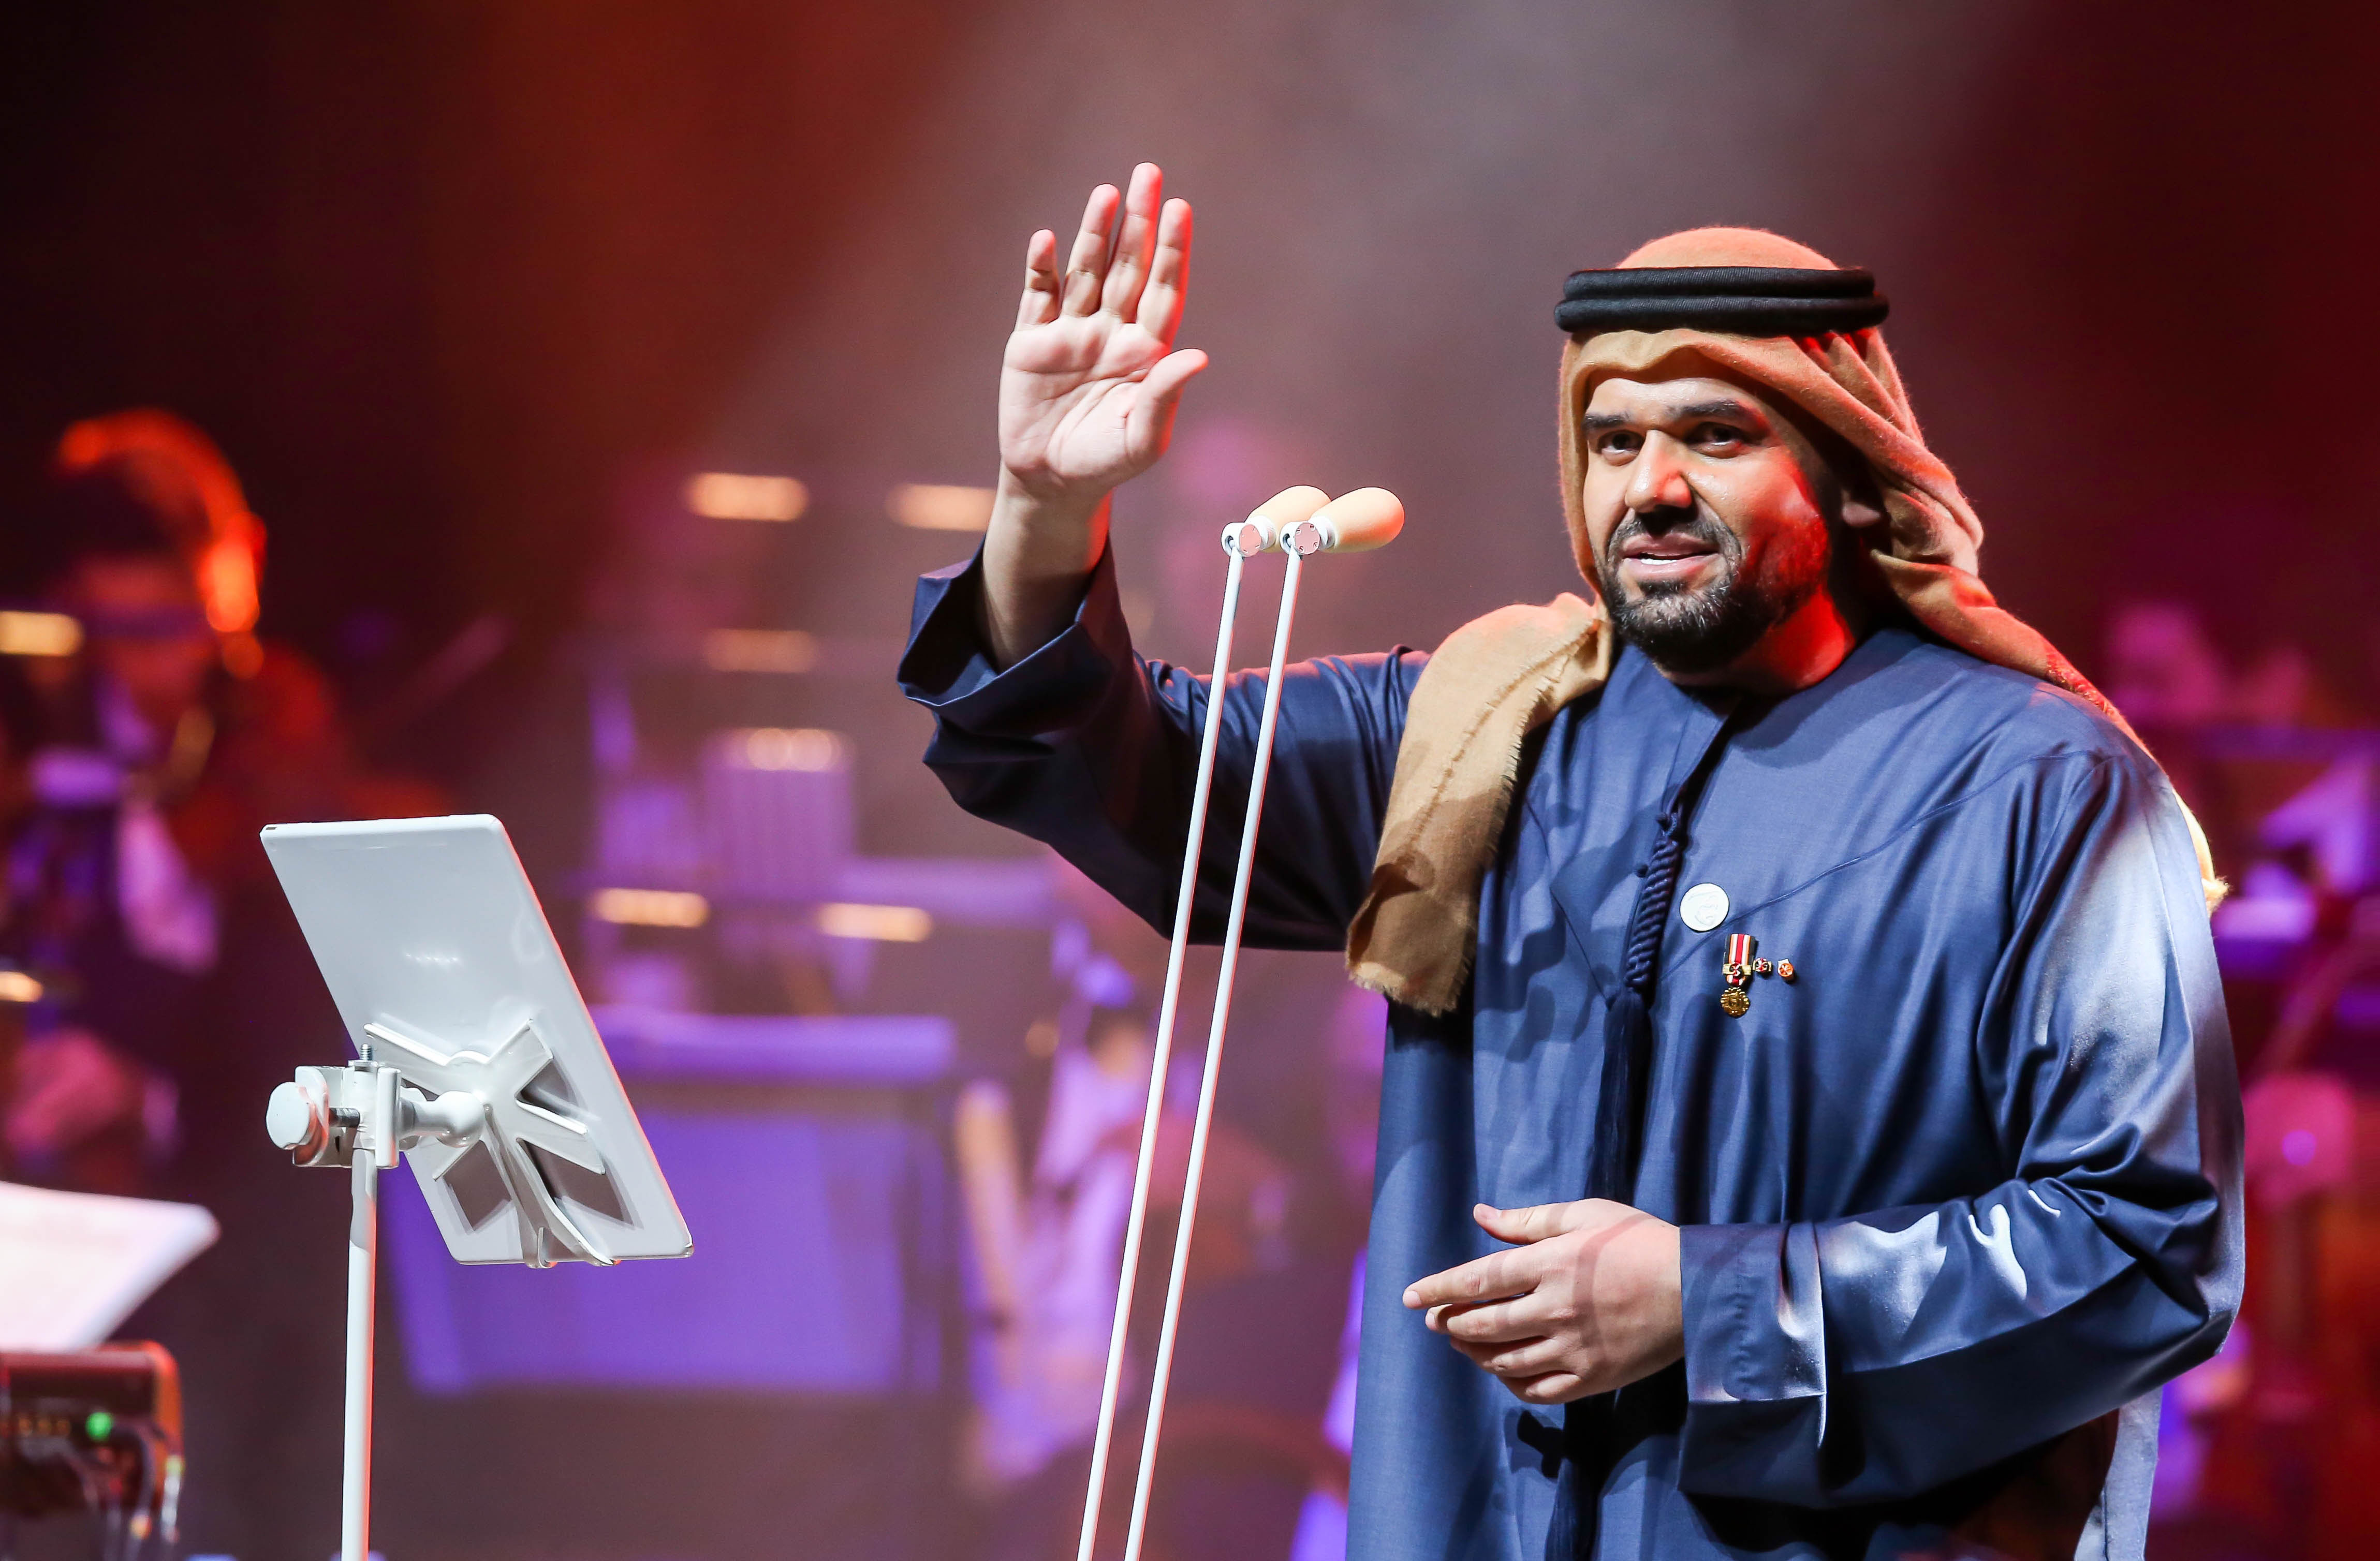 صورة حسين الجسمي اضاء دبي اوبرا في وداع 2018